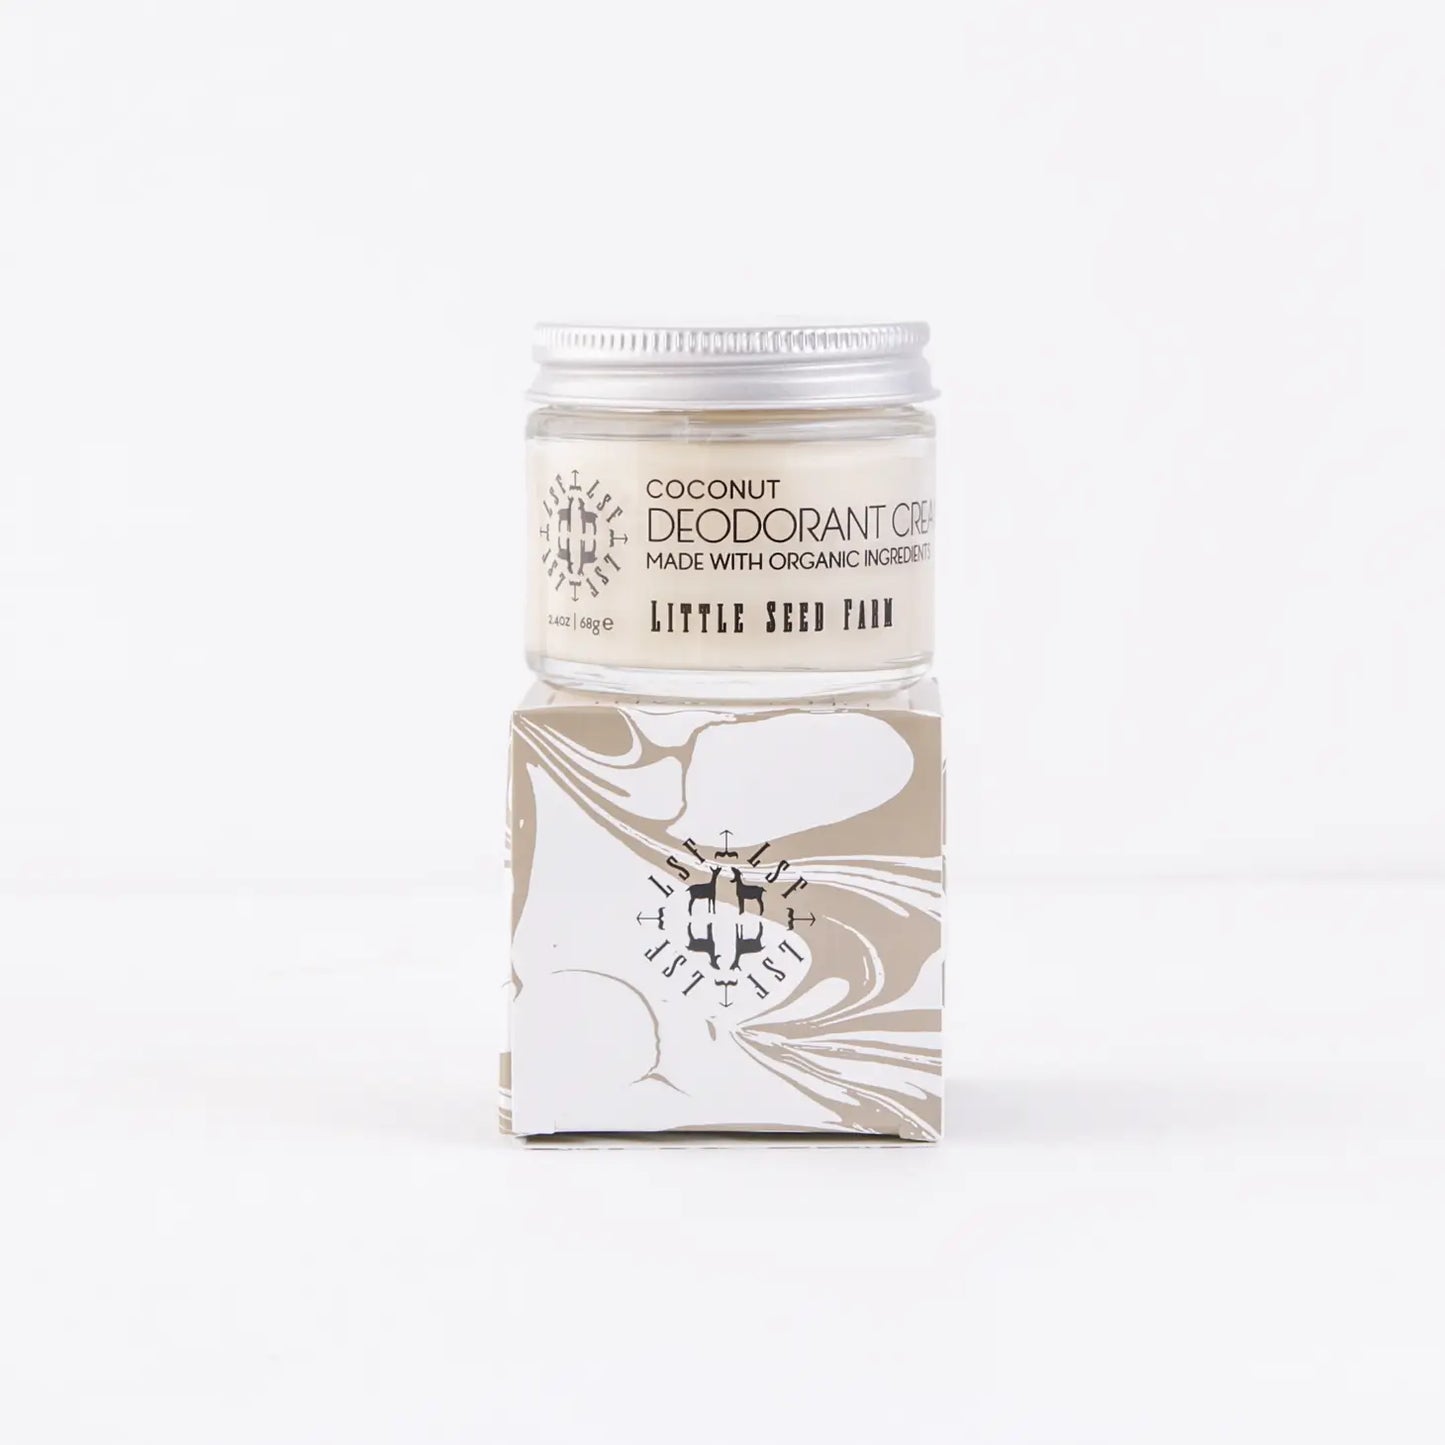 Deodorant Cream | Coconut